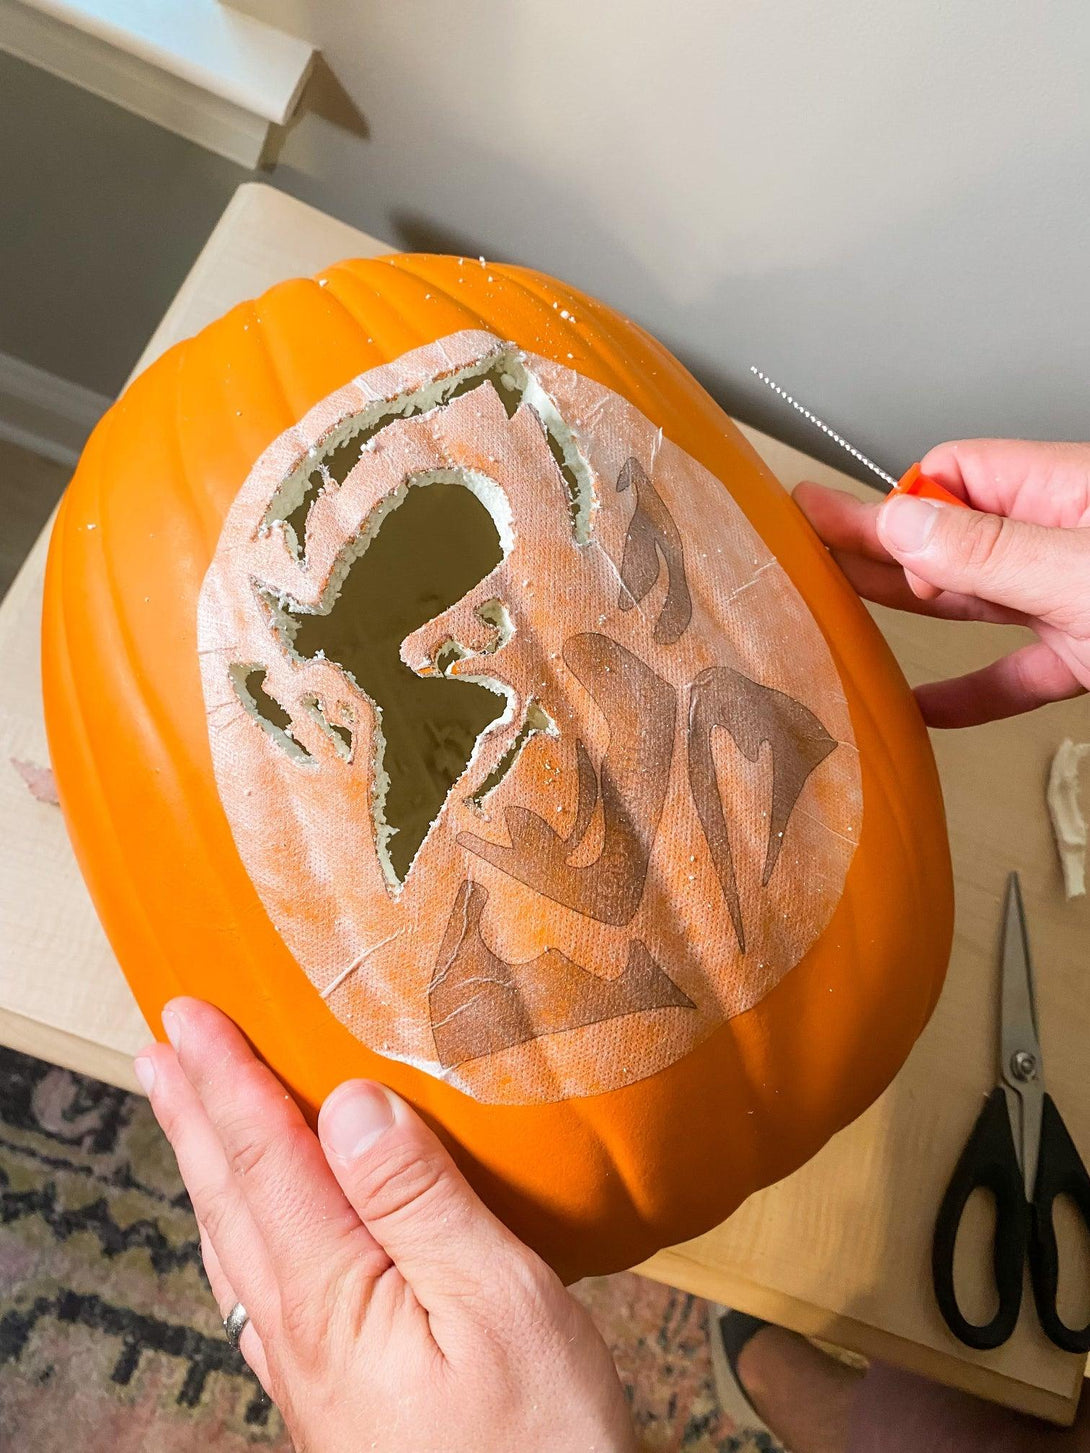 Monster Truck #1 Pumpkin Carving Stencil - Pumpkin HQ